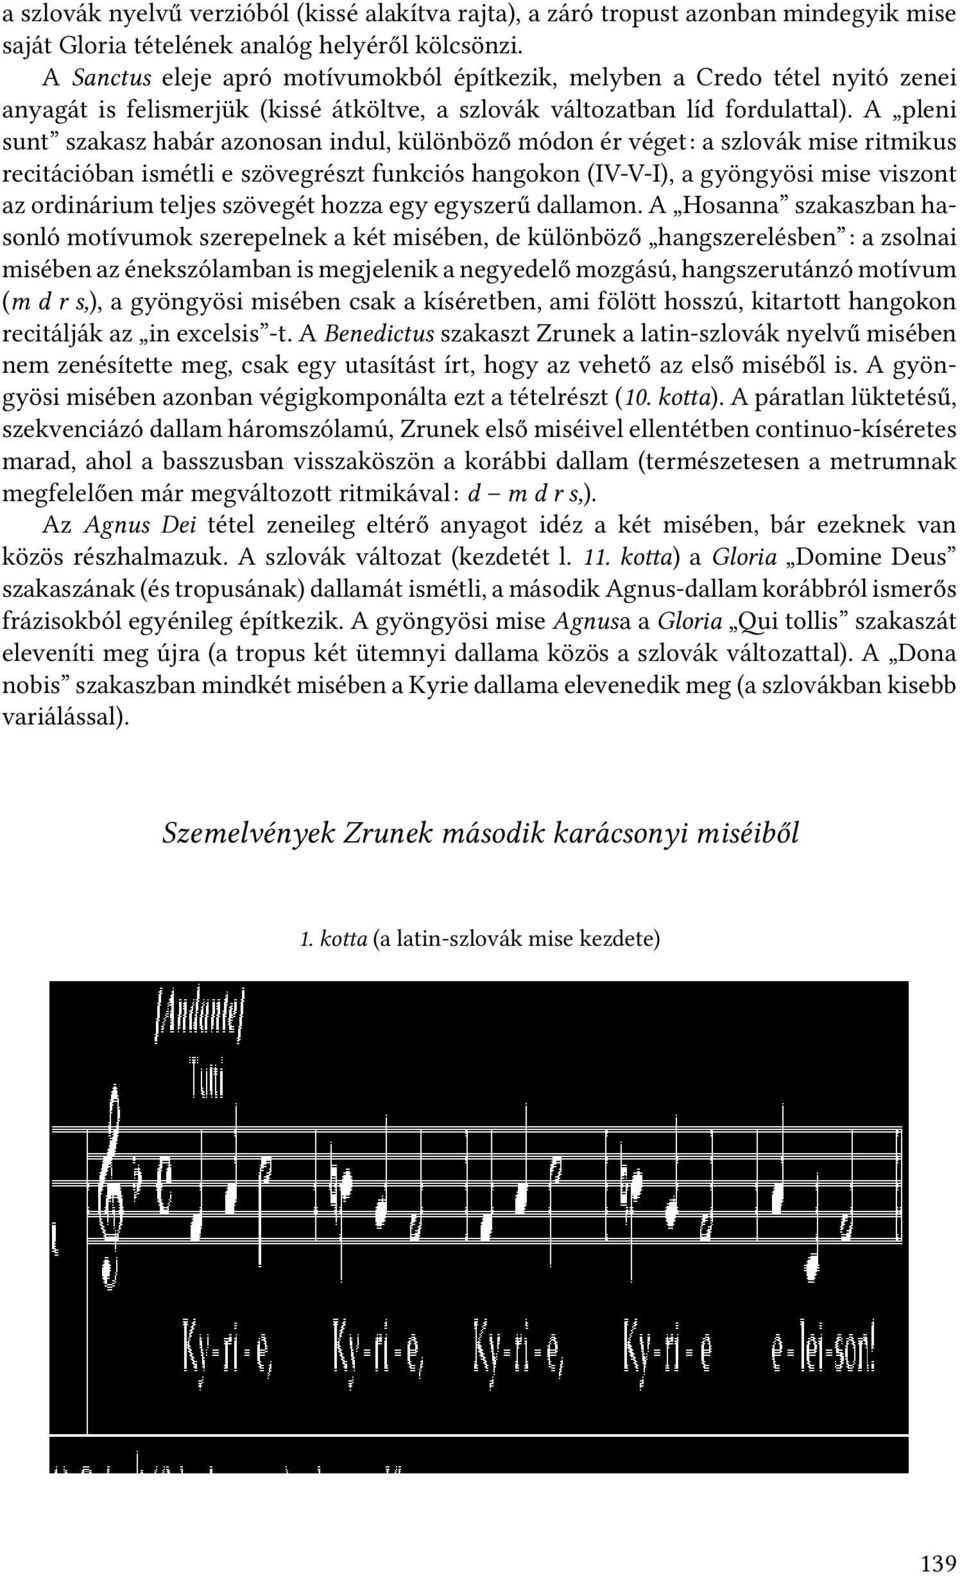 A pleni sunt szakasz habár azonosan indul, különböző módon ér véget: a szlovák mise ritmikus recitációban ismétli e szövegrészt funkciós hangokon (IV-V-I), a gyöngyösi mise viszont az ordinárium